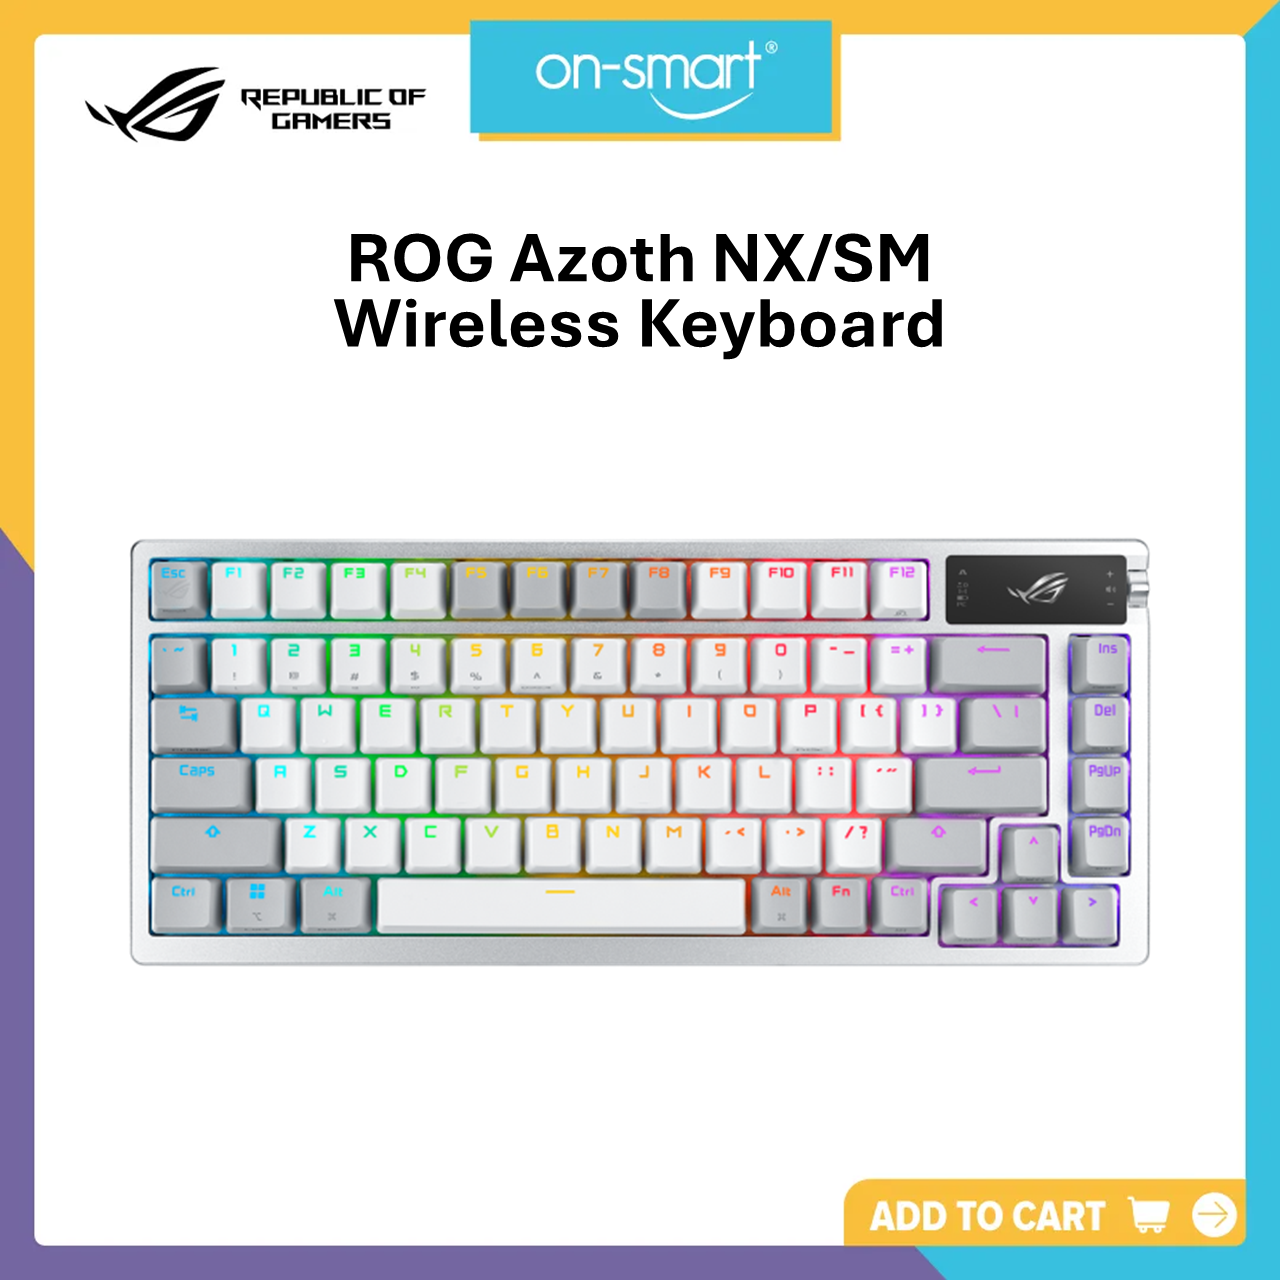 ASUS M701 ROG Azoth NX/SM (White) Wireless Mechanical Gaming Keyboard